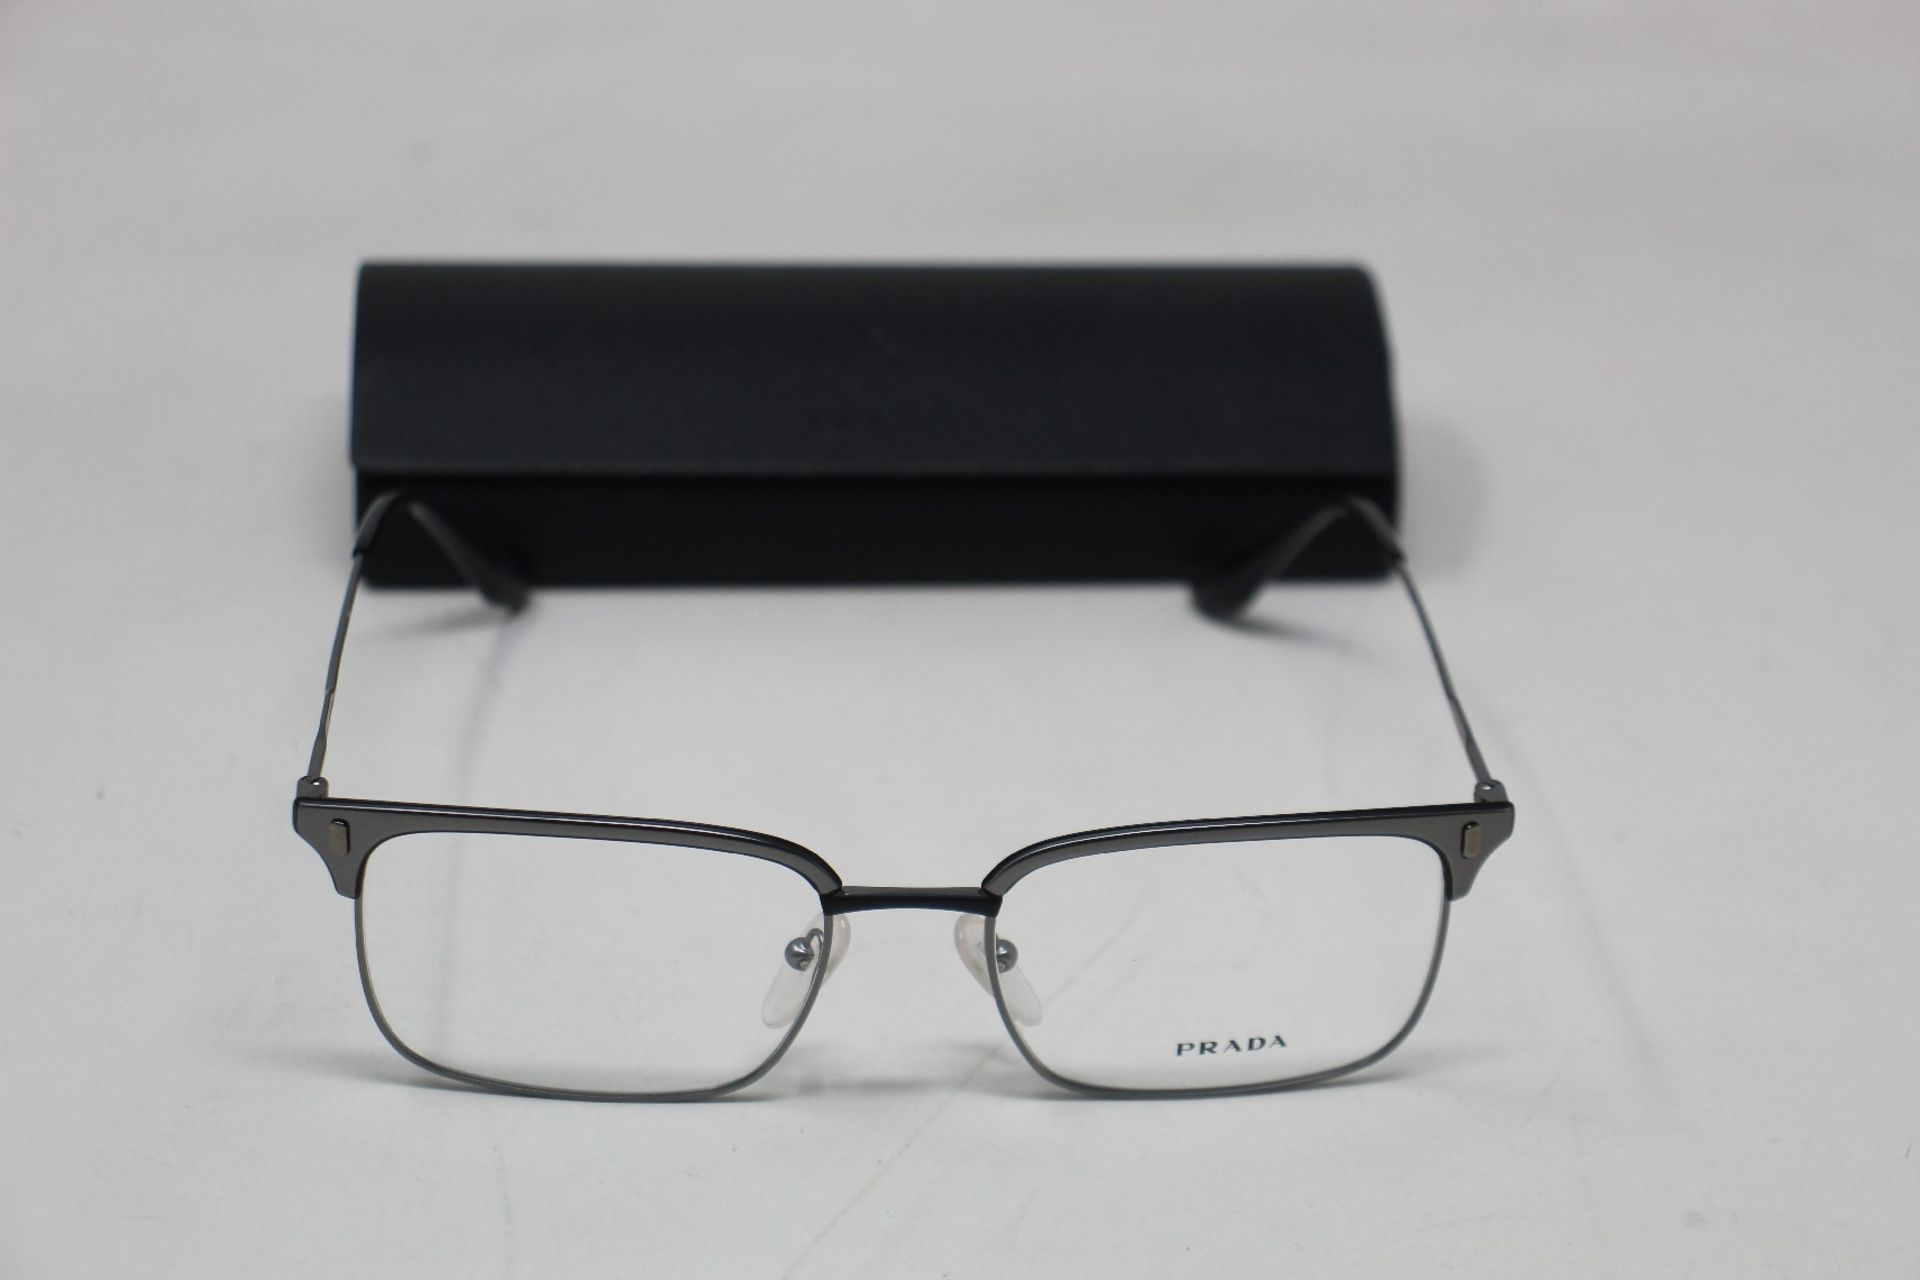 A pair of as new Prada glasses frames.